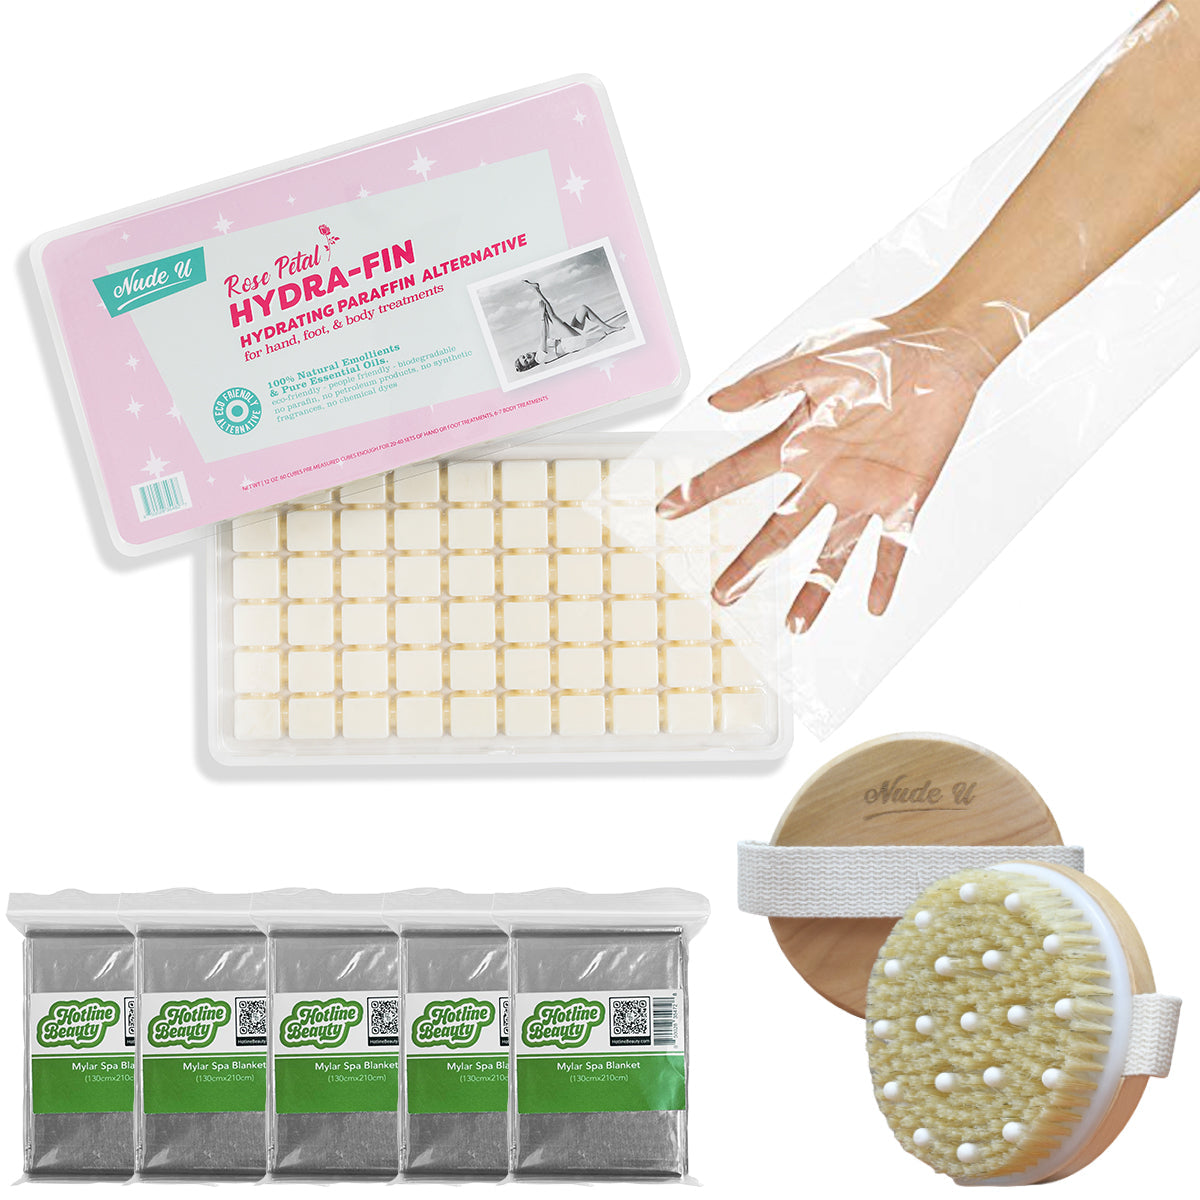 Advance Body Wrap Kit | Hydrating Paraffin Alternative | NUDE U Spas NUDE U Rose Petal Hydra-Fin 